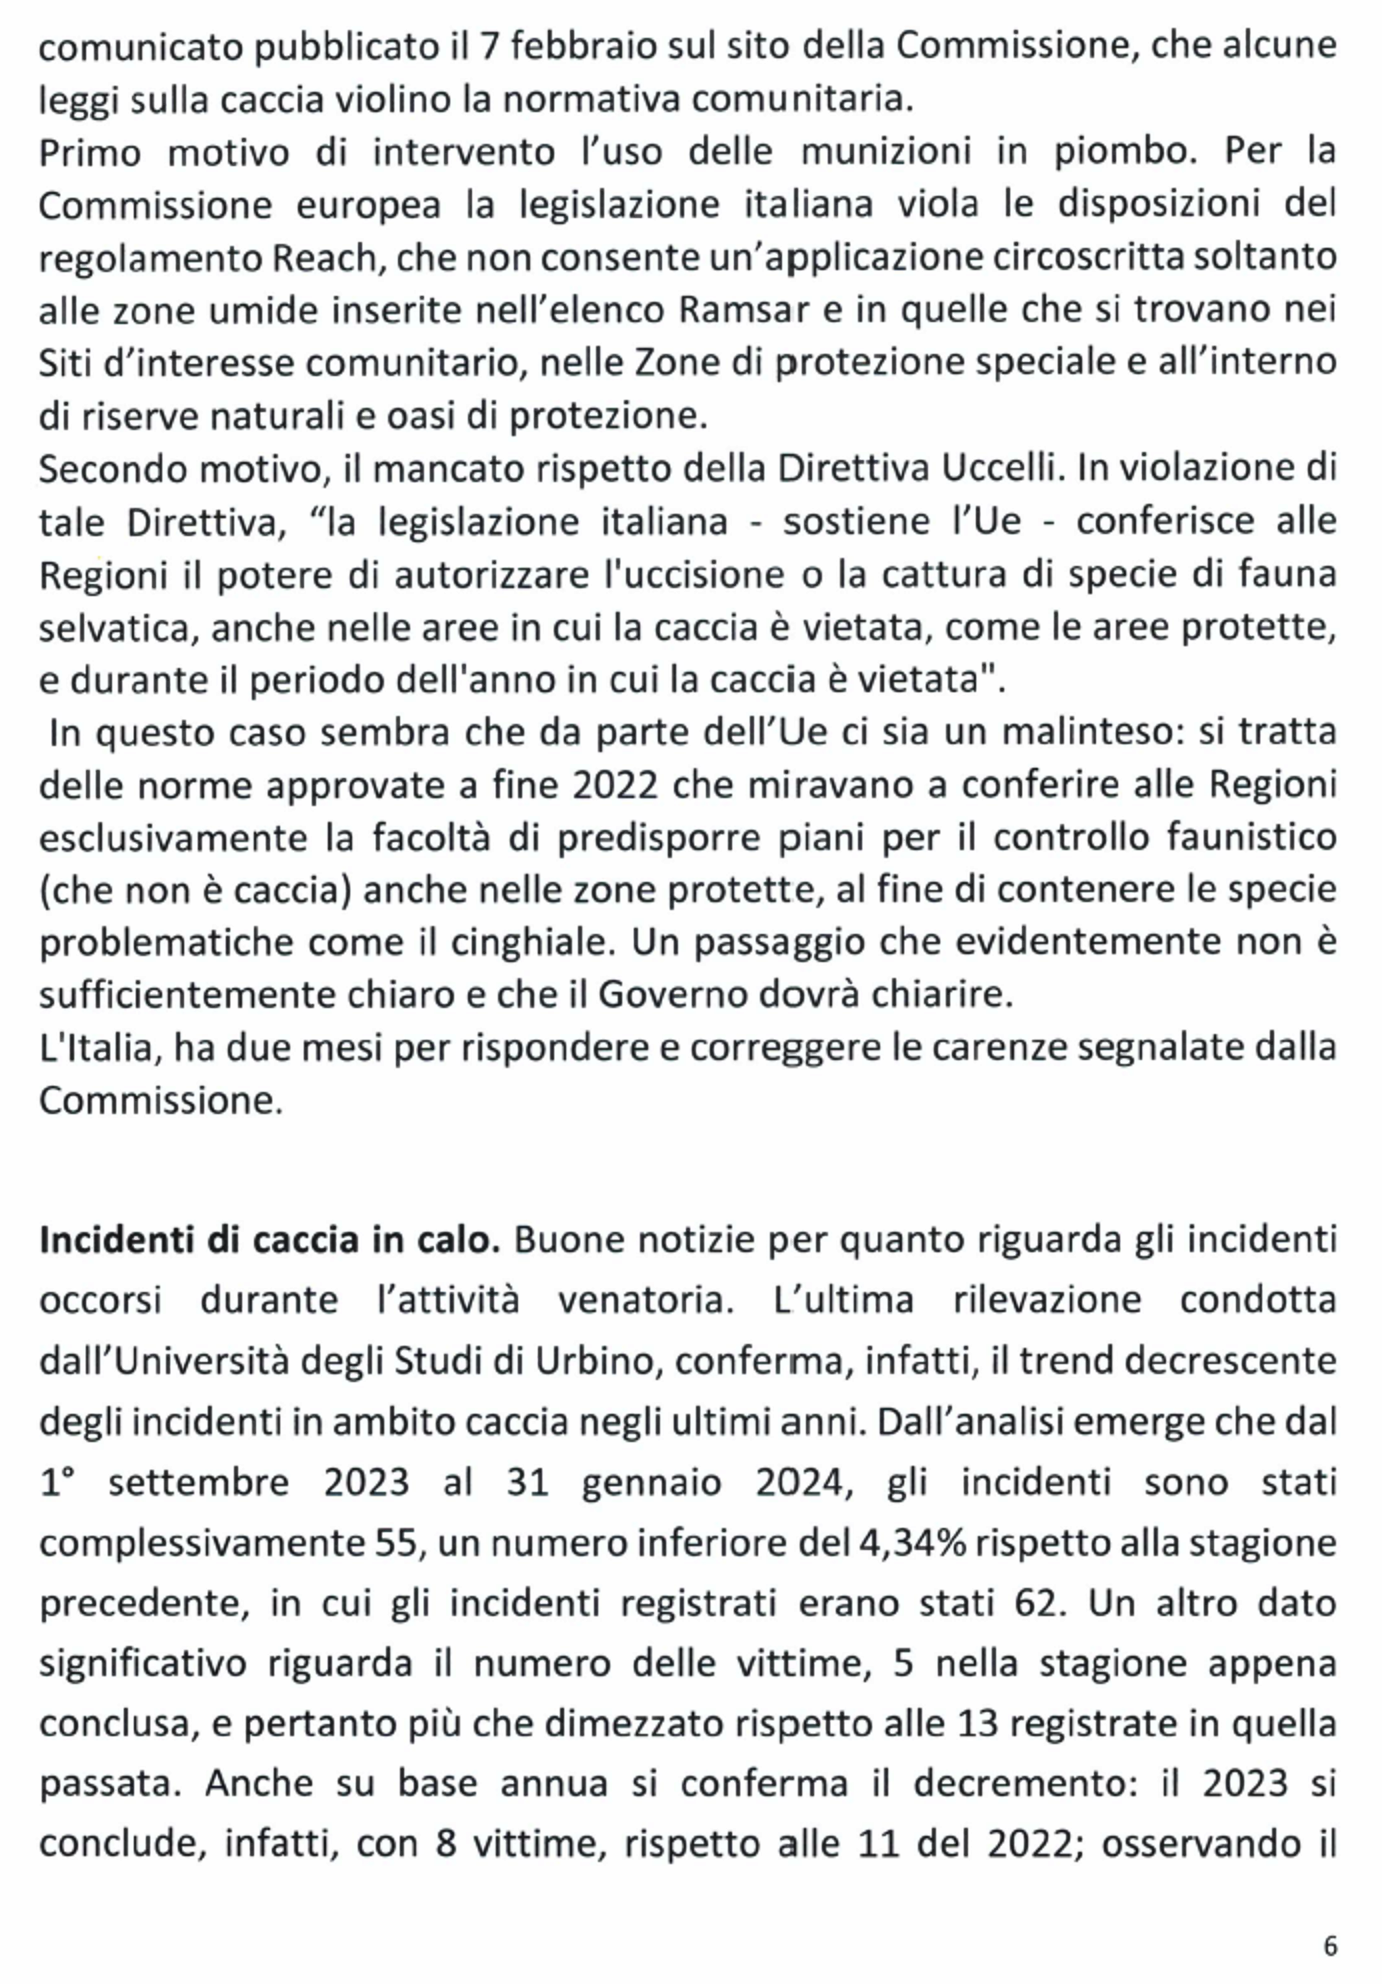 Foglio Notizie Il Becaccino - Nr. 1/2024